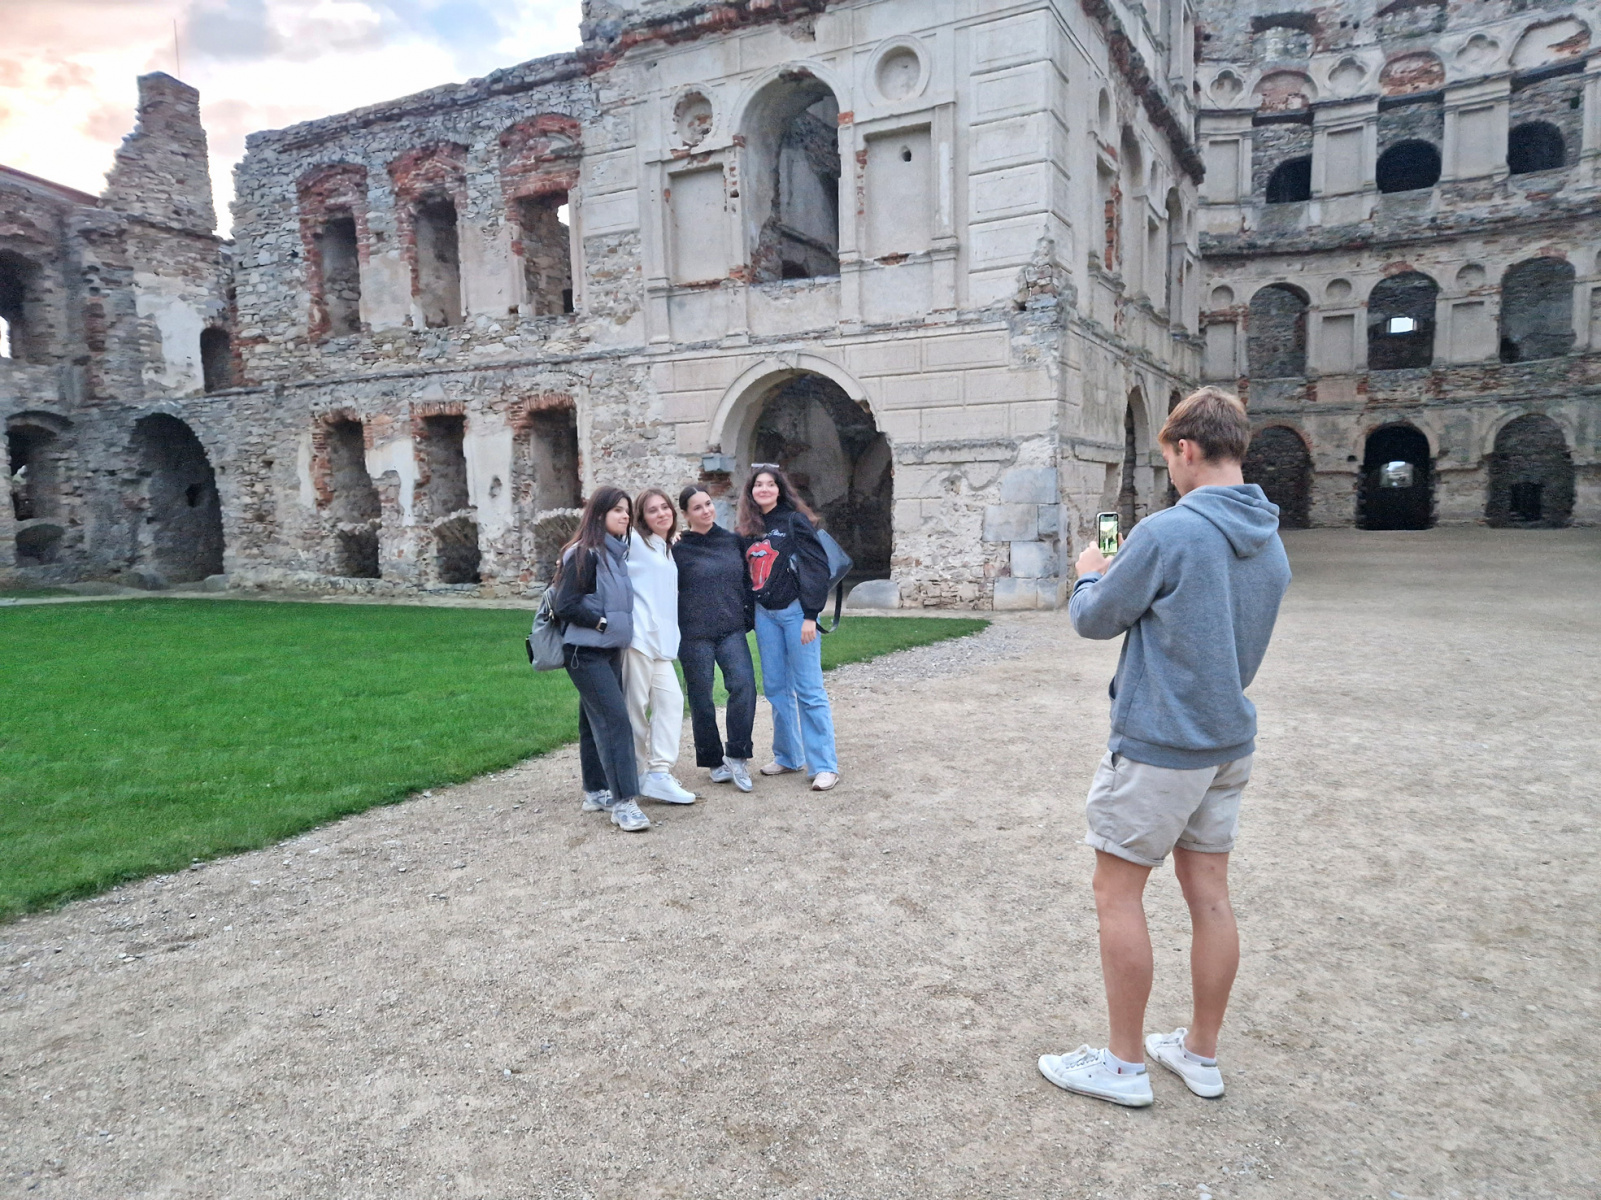 Po lewej grupa studentek pozuje do zdjęcia. Po prawej student stoi z telefonem i robi im zdjęcia. W tle ruiny zamku Krzyżtopór.